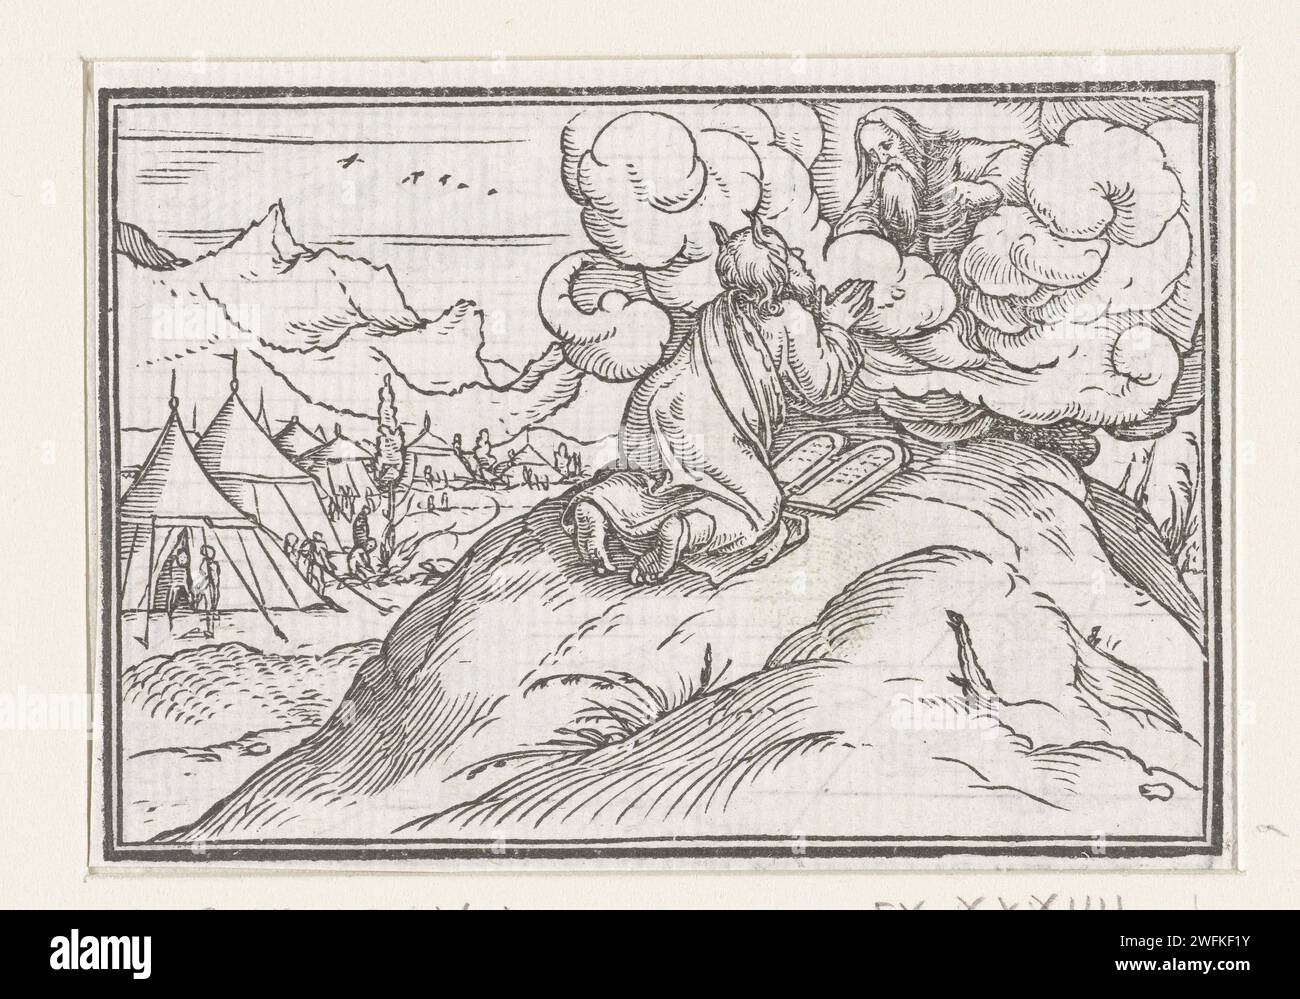 Moïse reçoit les tables de la Loi, Hans Holbein (II), 1538 imprimer Moïse reçoit les tables de la loi de Dieu sur le papier du Mont Sinaï Moïse sur le Mont Sinaï avec les tables de la loi (Exode 24:9-18, 31:18) Banque D'Images